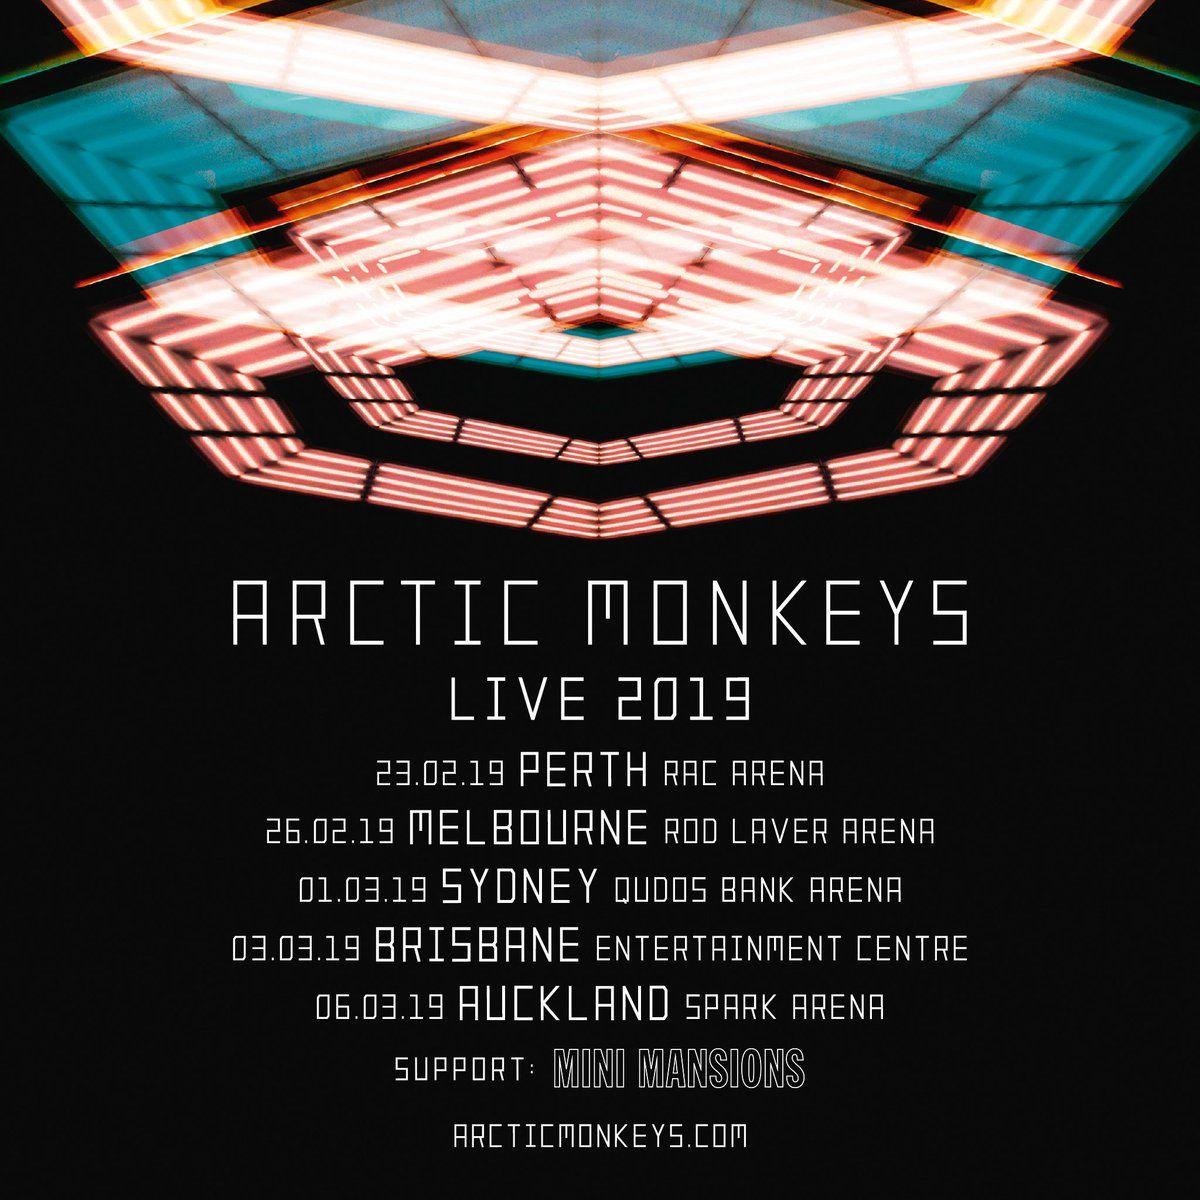 Arctic Monkeys Official Logo - Arctic Monkeys